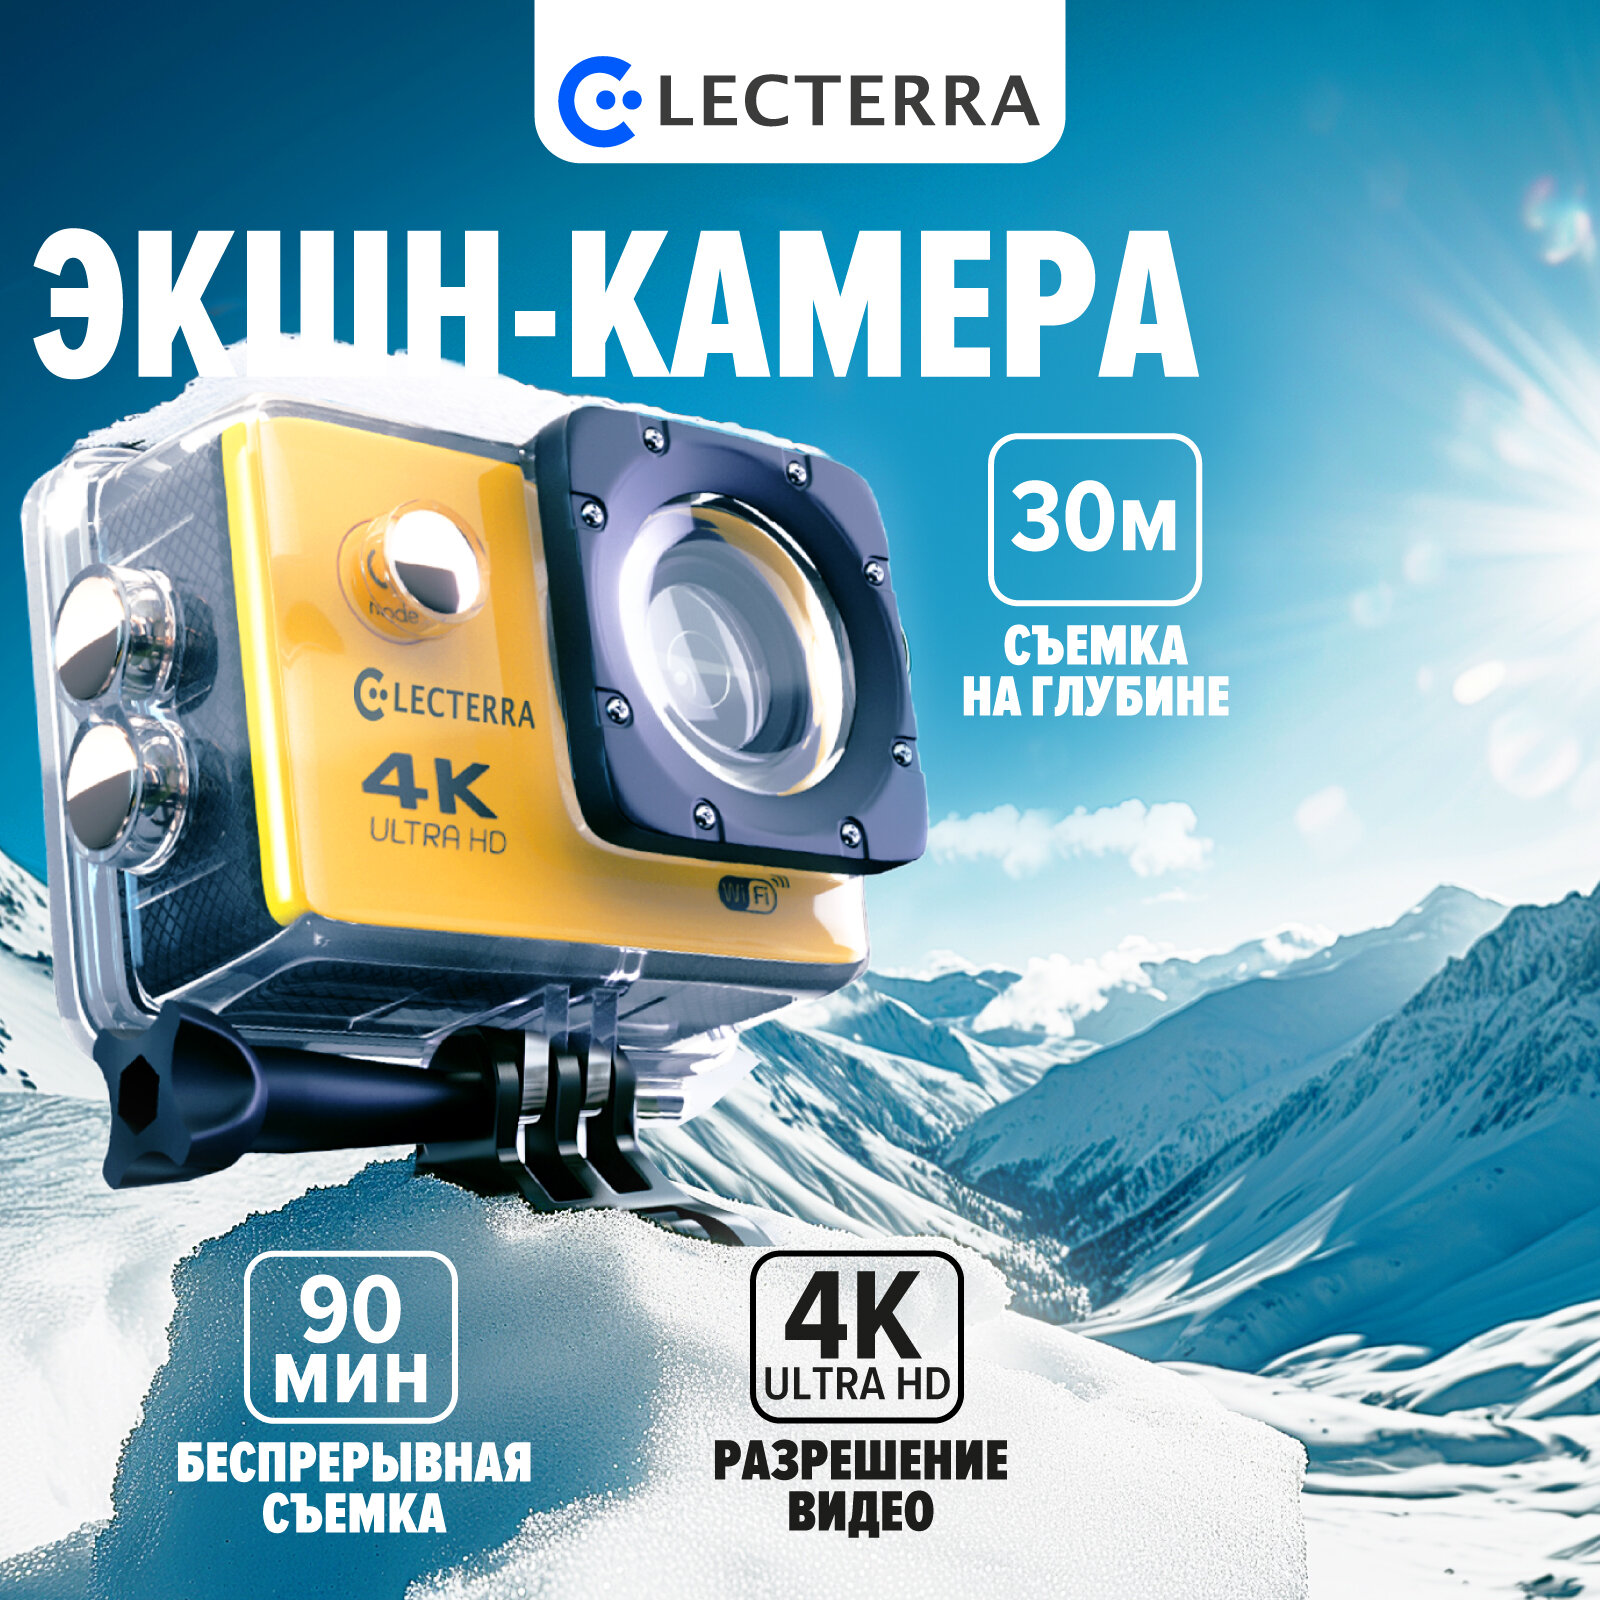 Экшн камера Electerra 4К UHD 30 fps. Подводная съемка. Набор креплений. Пульт ДУ. Аквабокс. Видеокамера для активного отдыха. Желтый